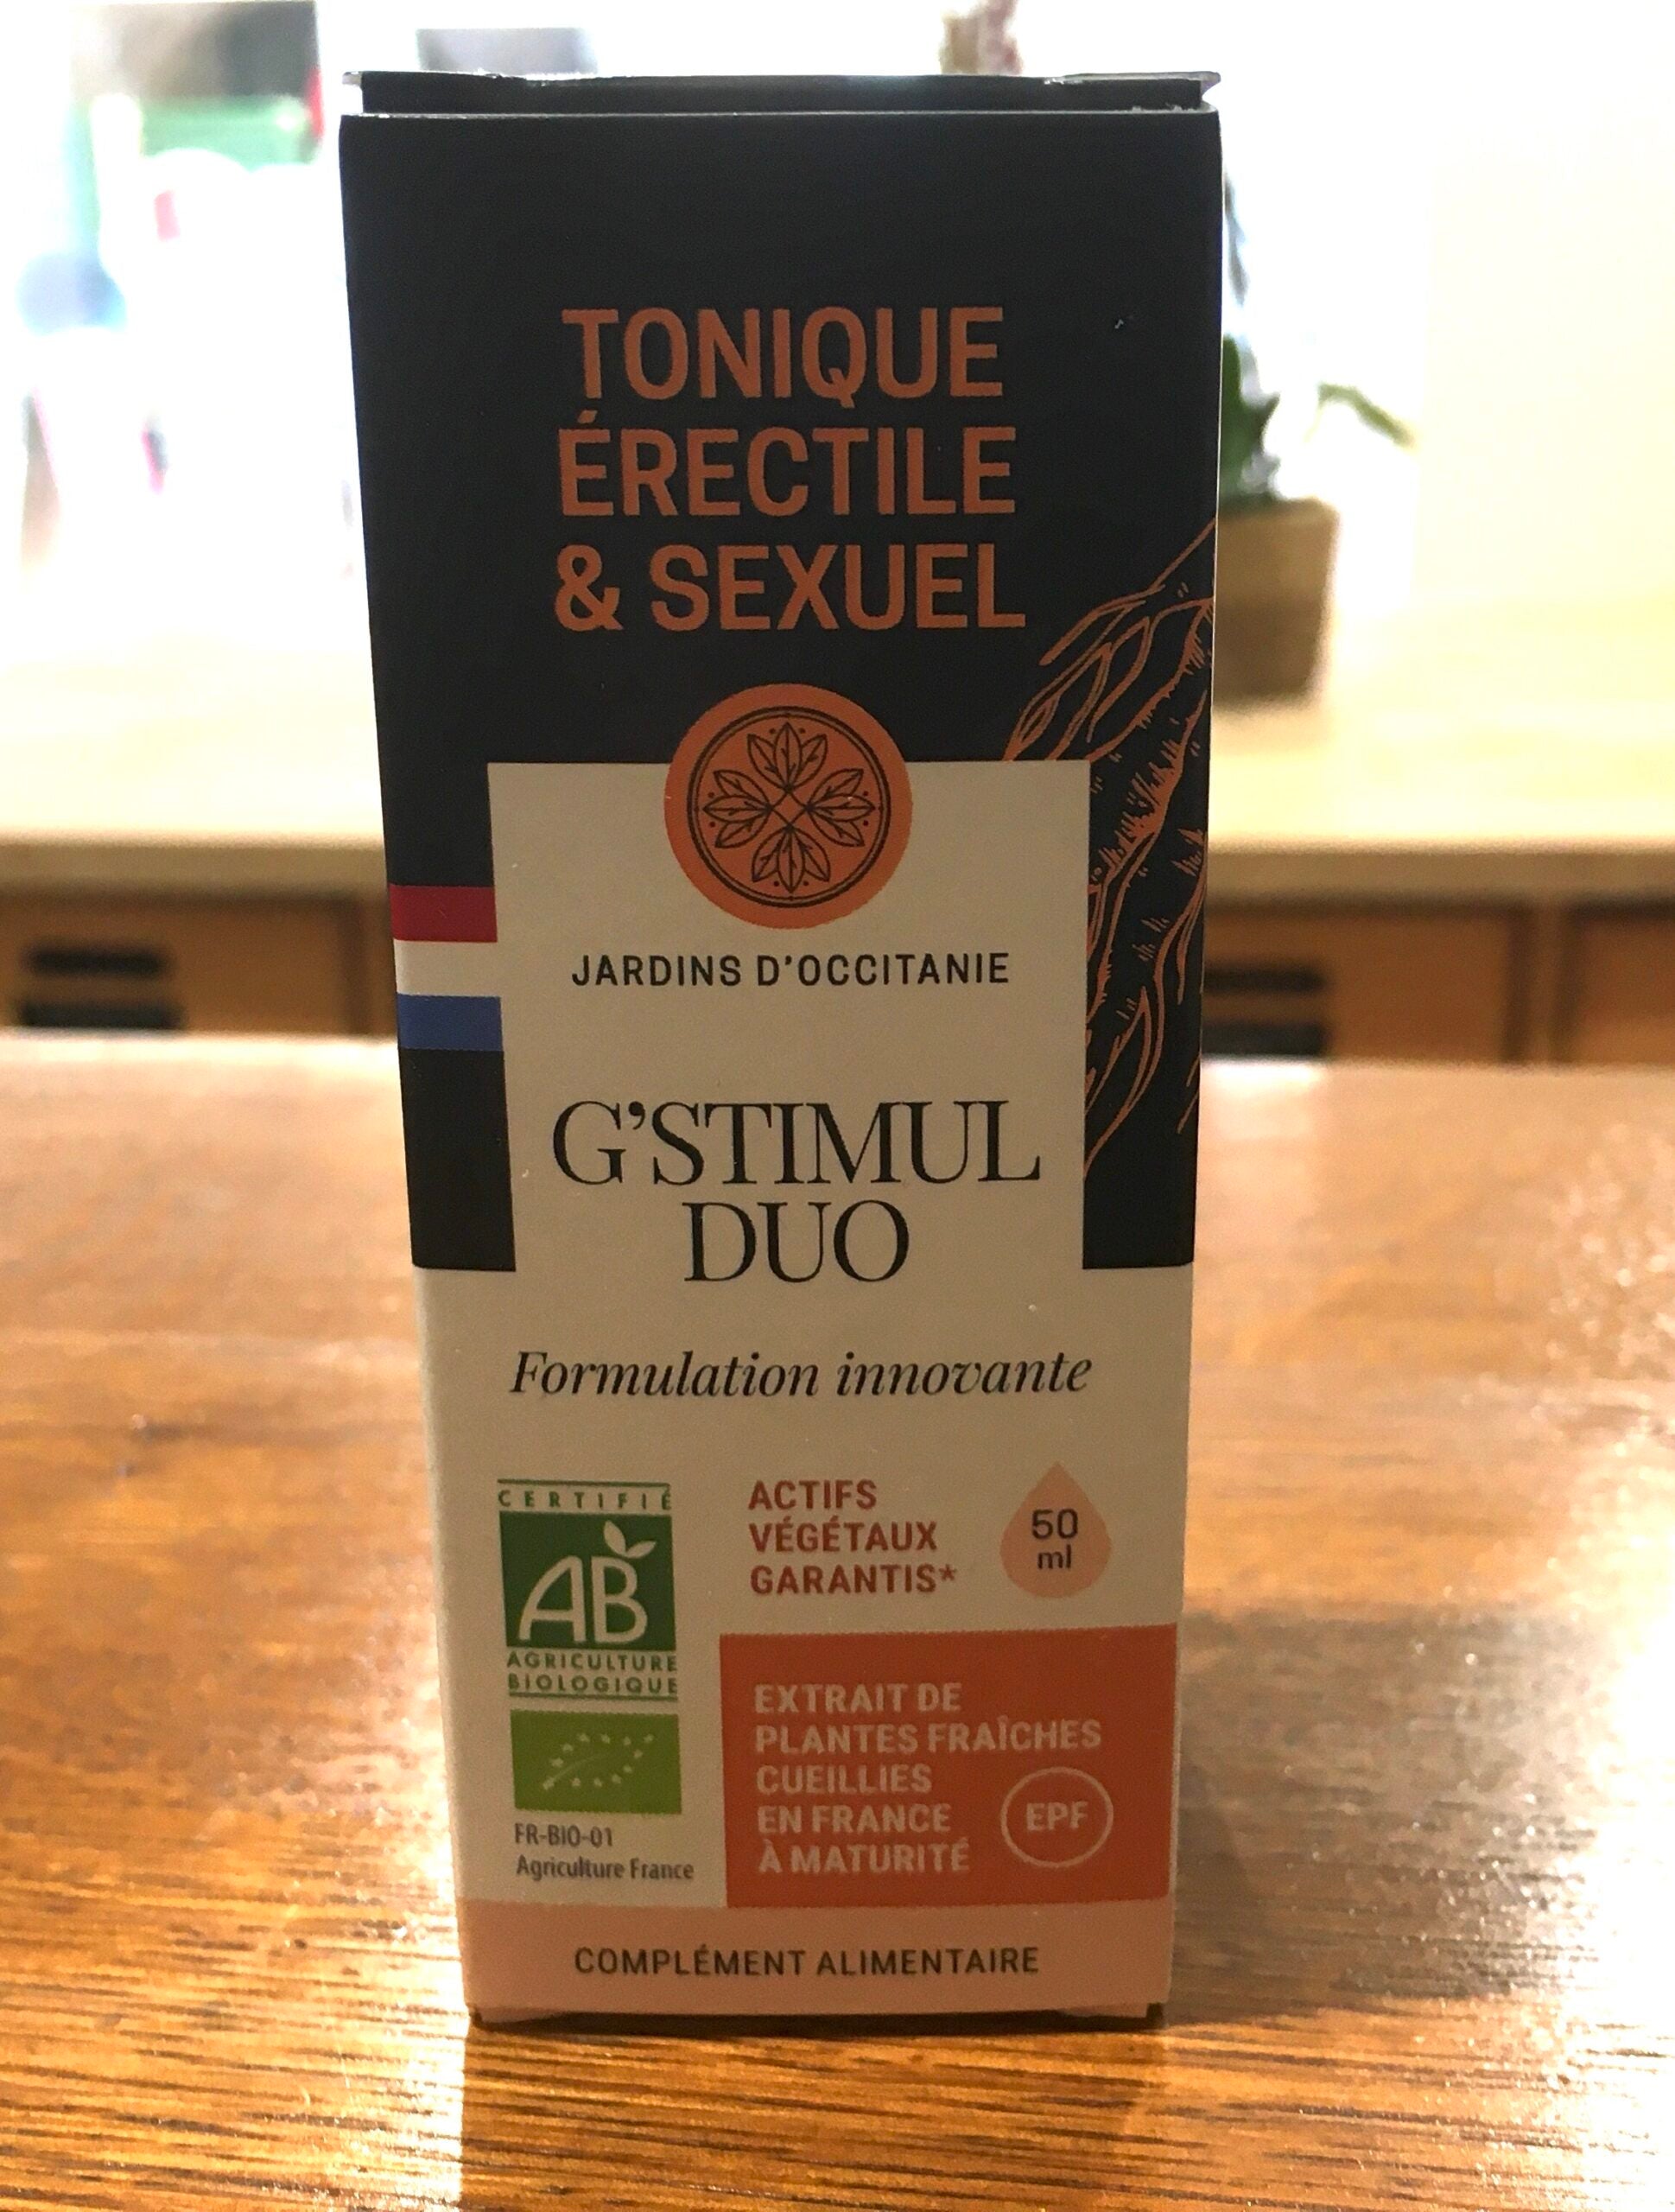 G’Stimul duo - Tonique érectile et sexuel